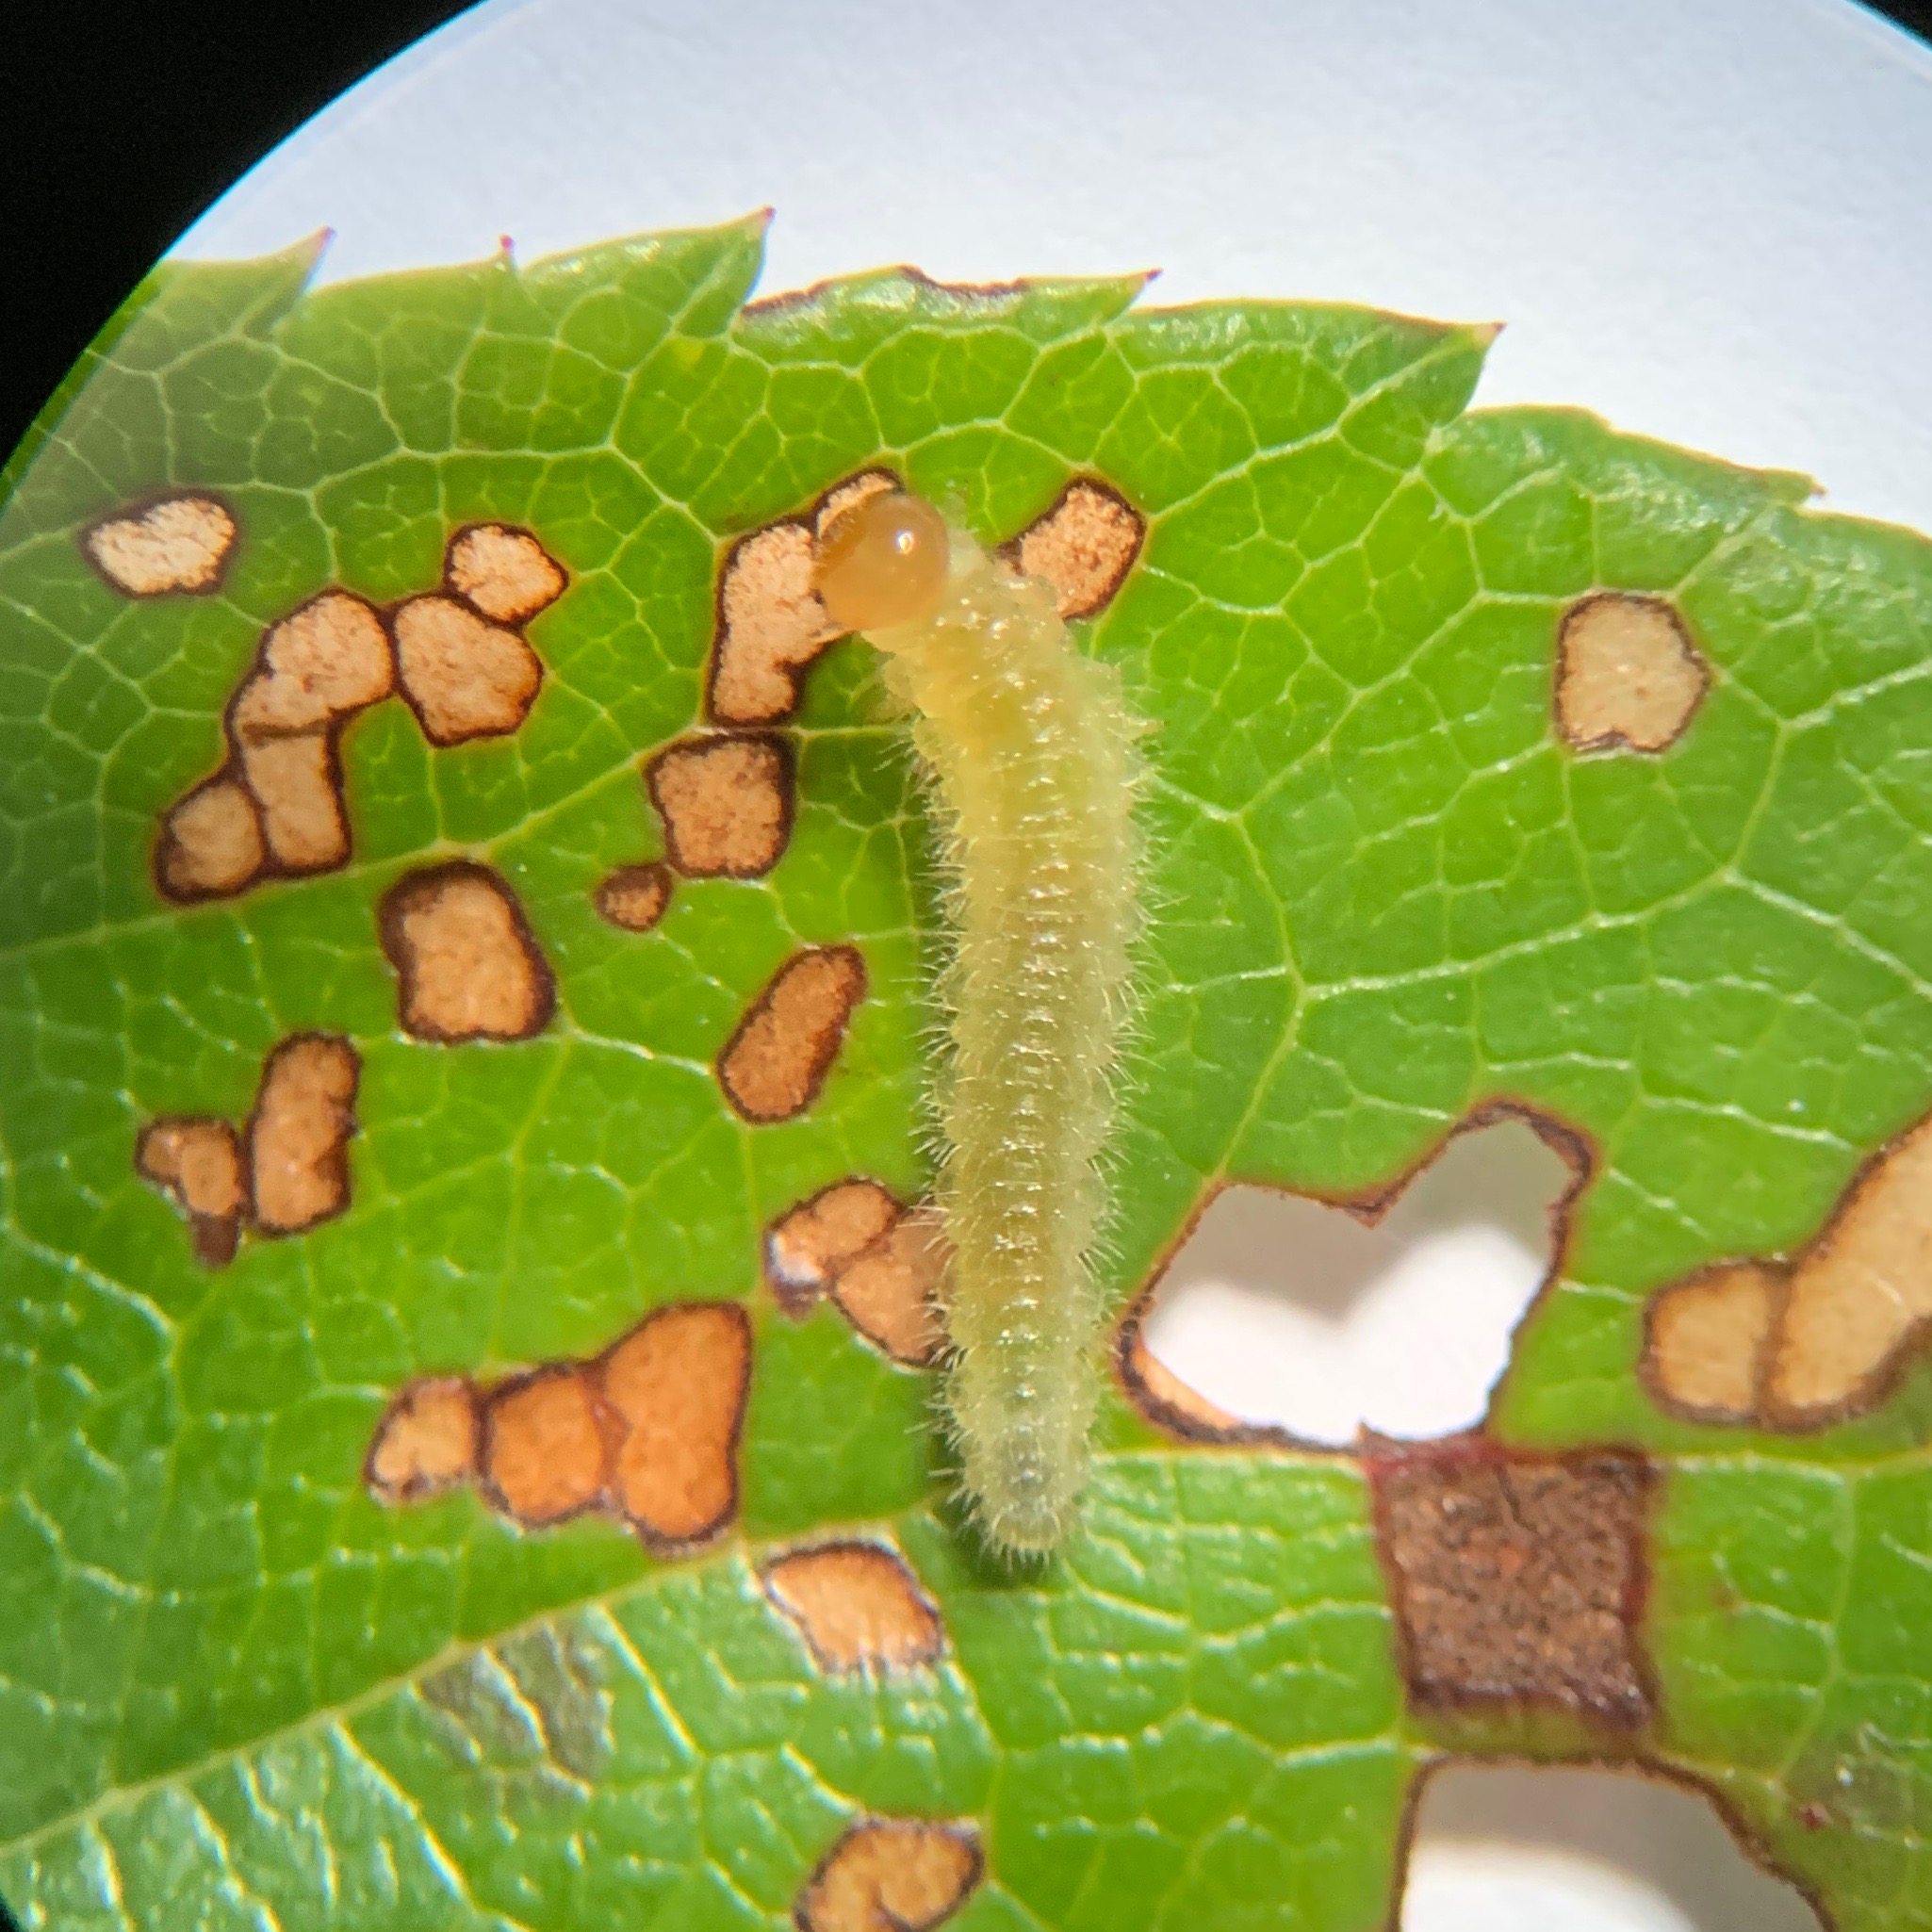 Rose slug sawfly larva